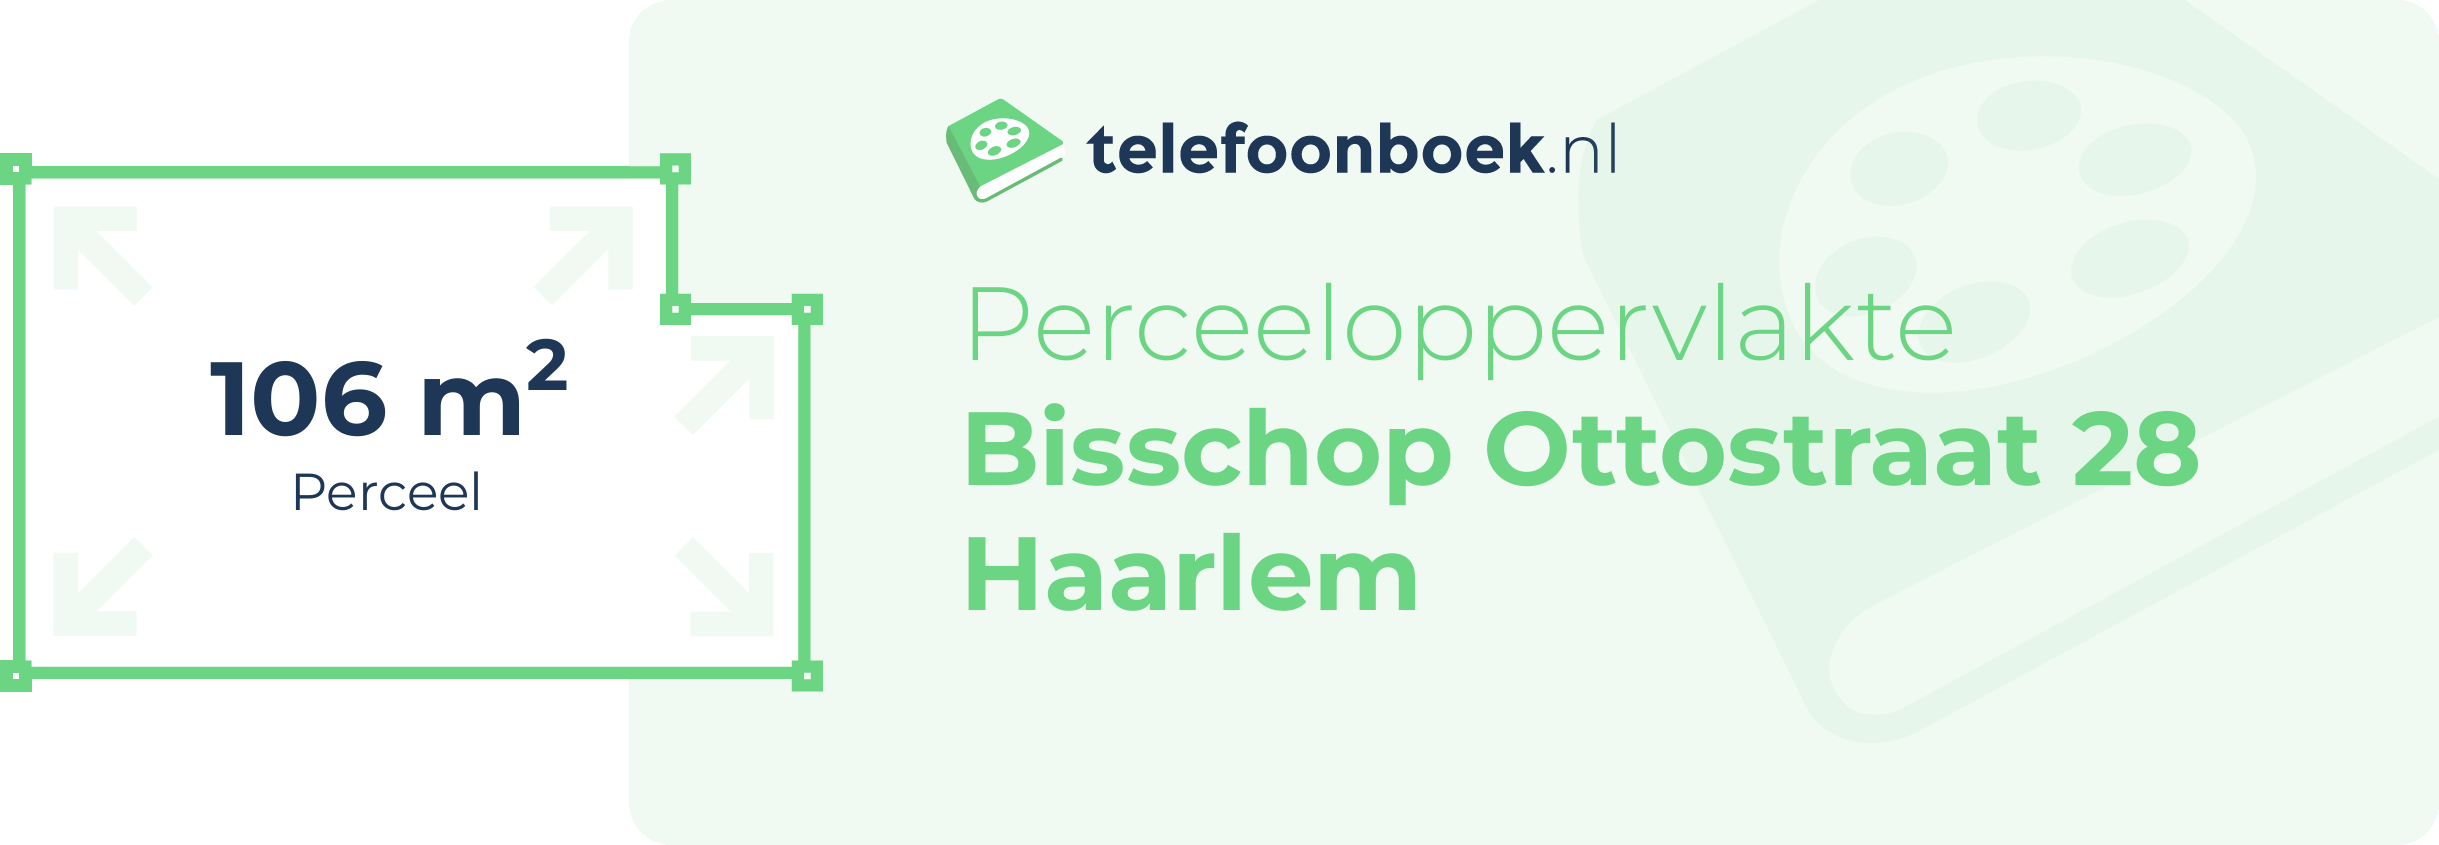 Perceeloppervlakte Bisschop Ottostraat 28 Haarlem